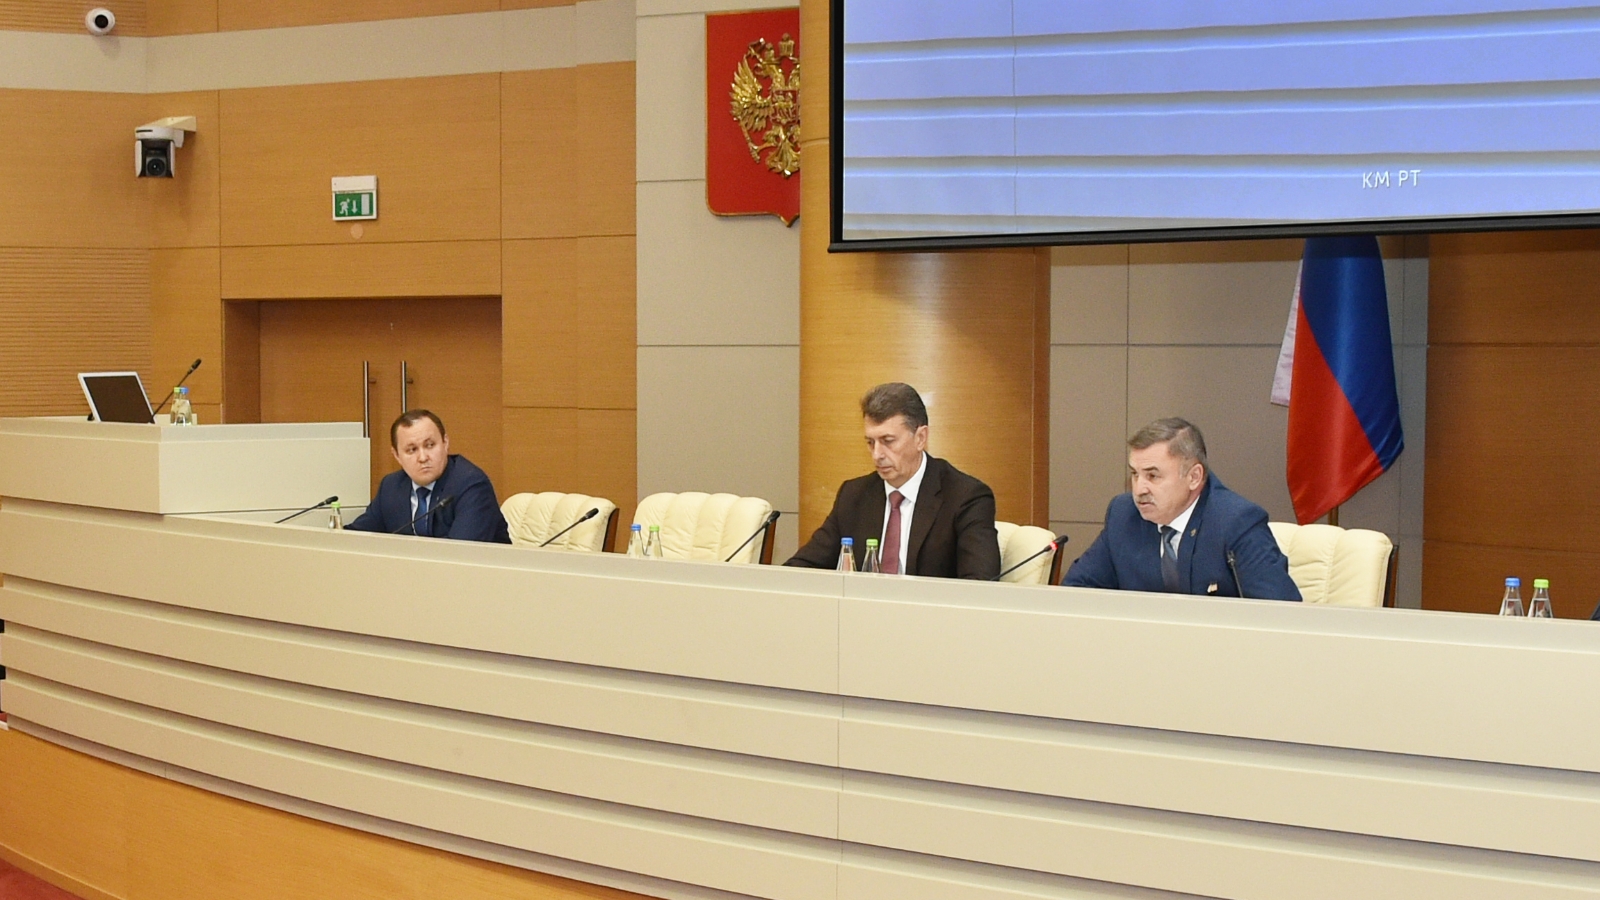 Министр транспорта Татарстана. Рт 2020 1 этап